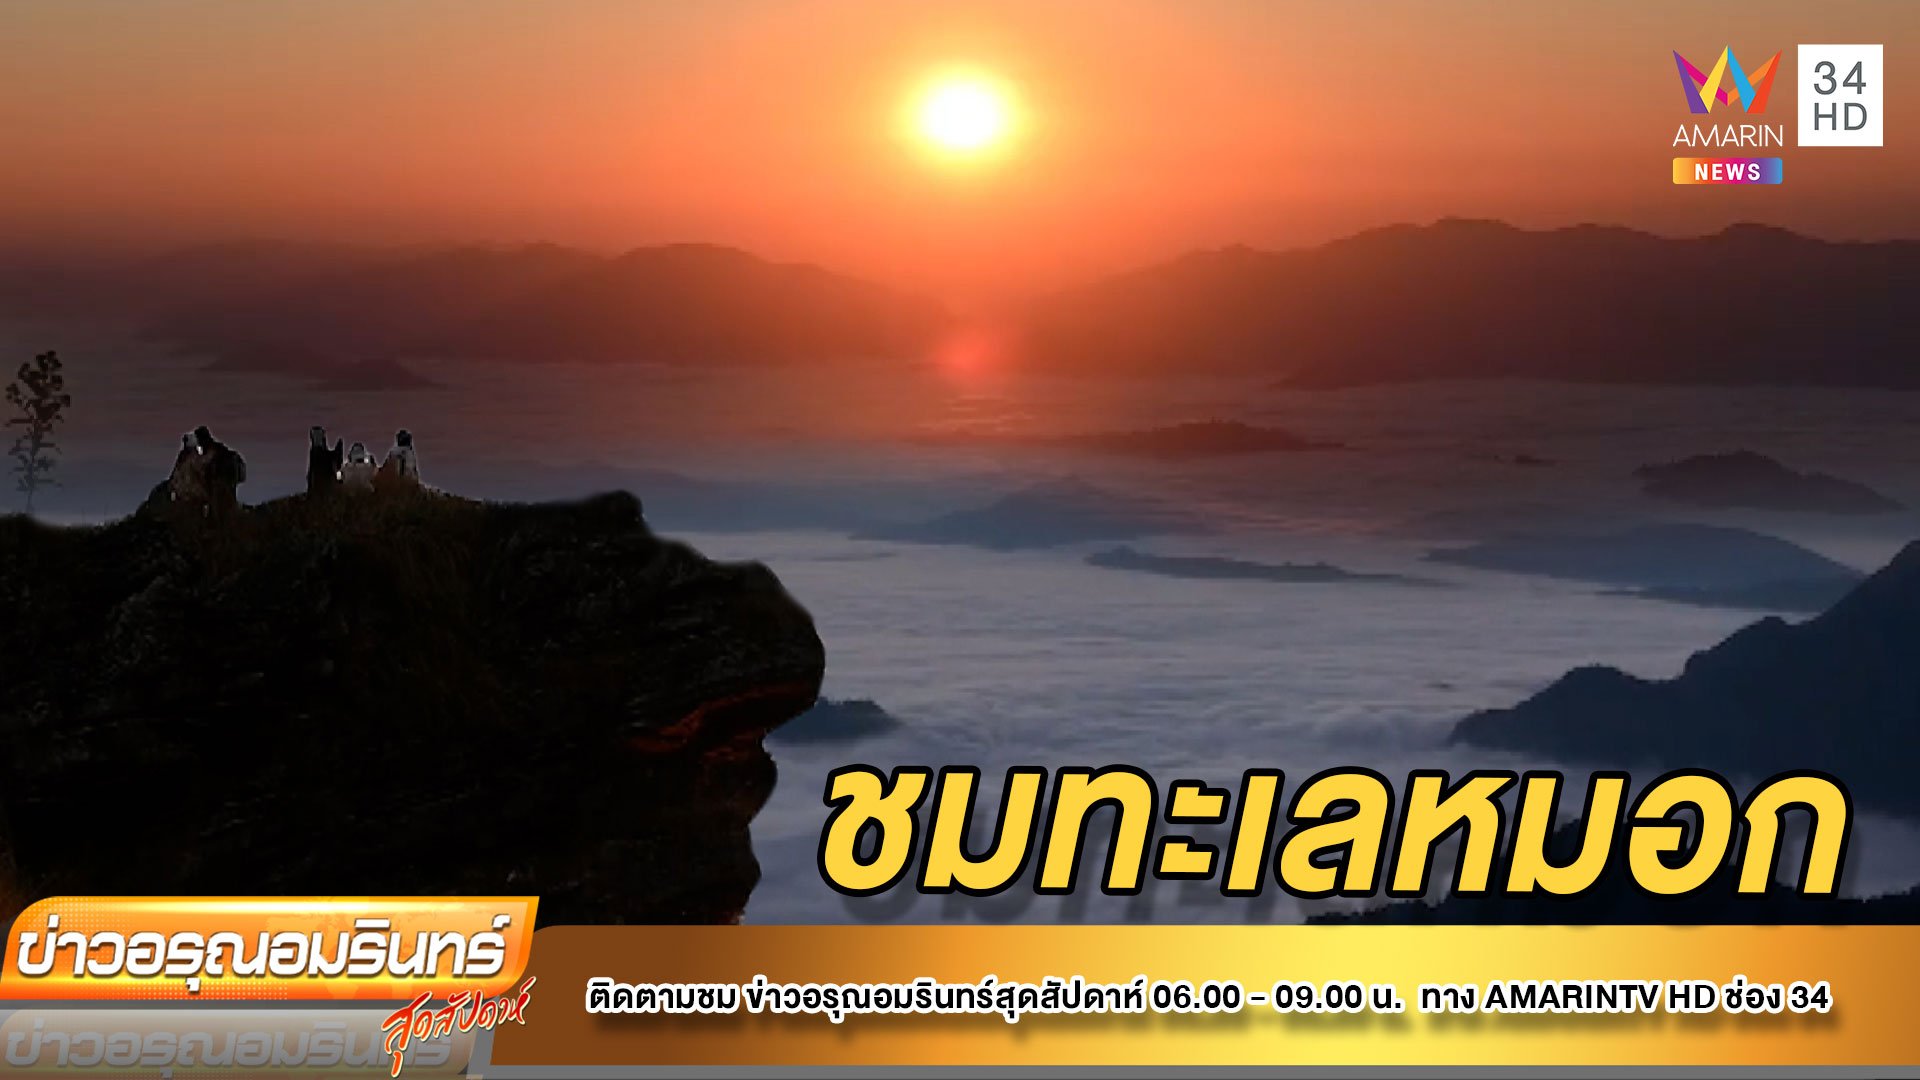 ชวนชมทะเลหมอก “ภูชี้ฟ้า” สุดอลังการ  | ข่าวอรุณอมรินทร์ | 5 ธ.ค. 64 | AMARIN TVHD34